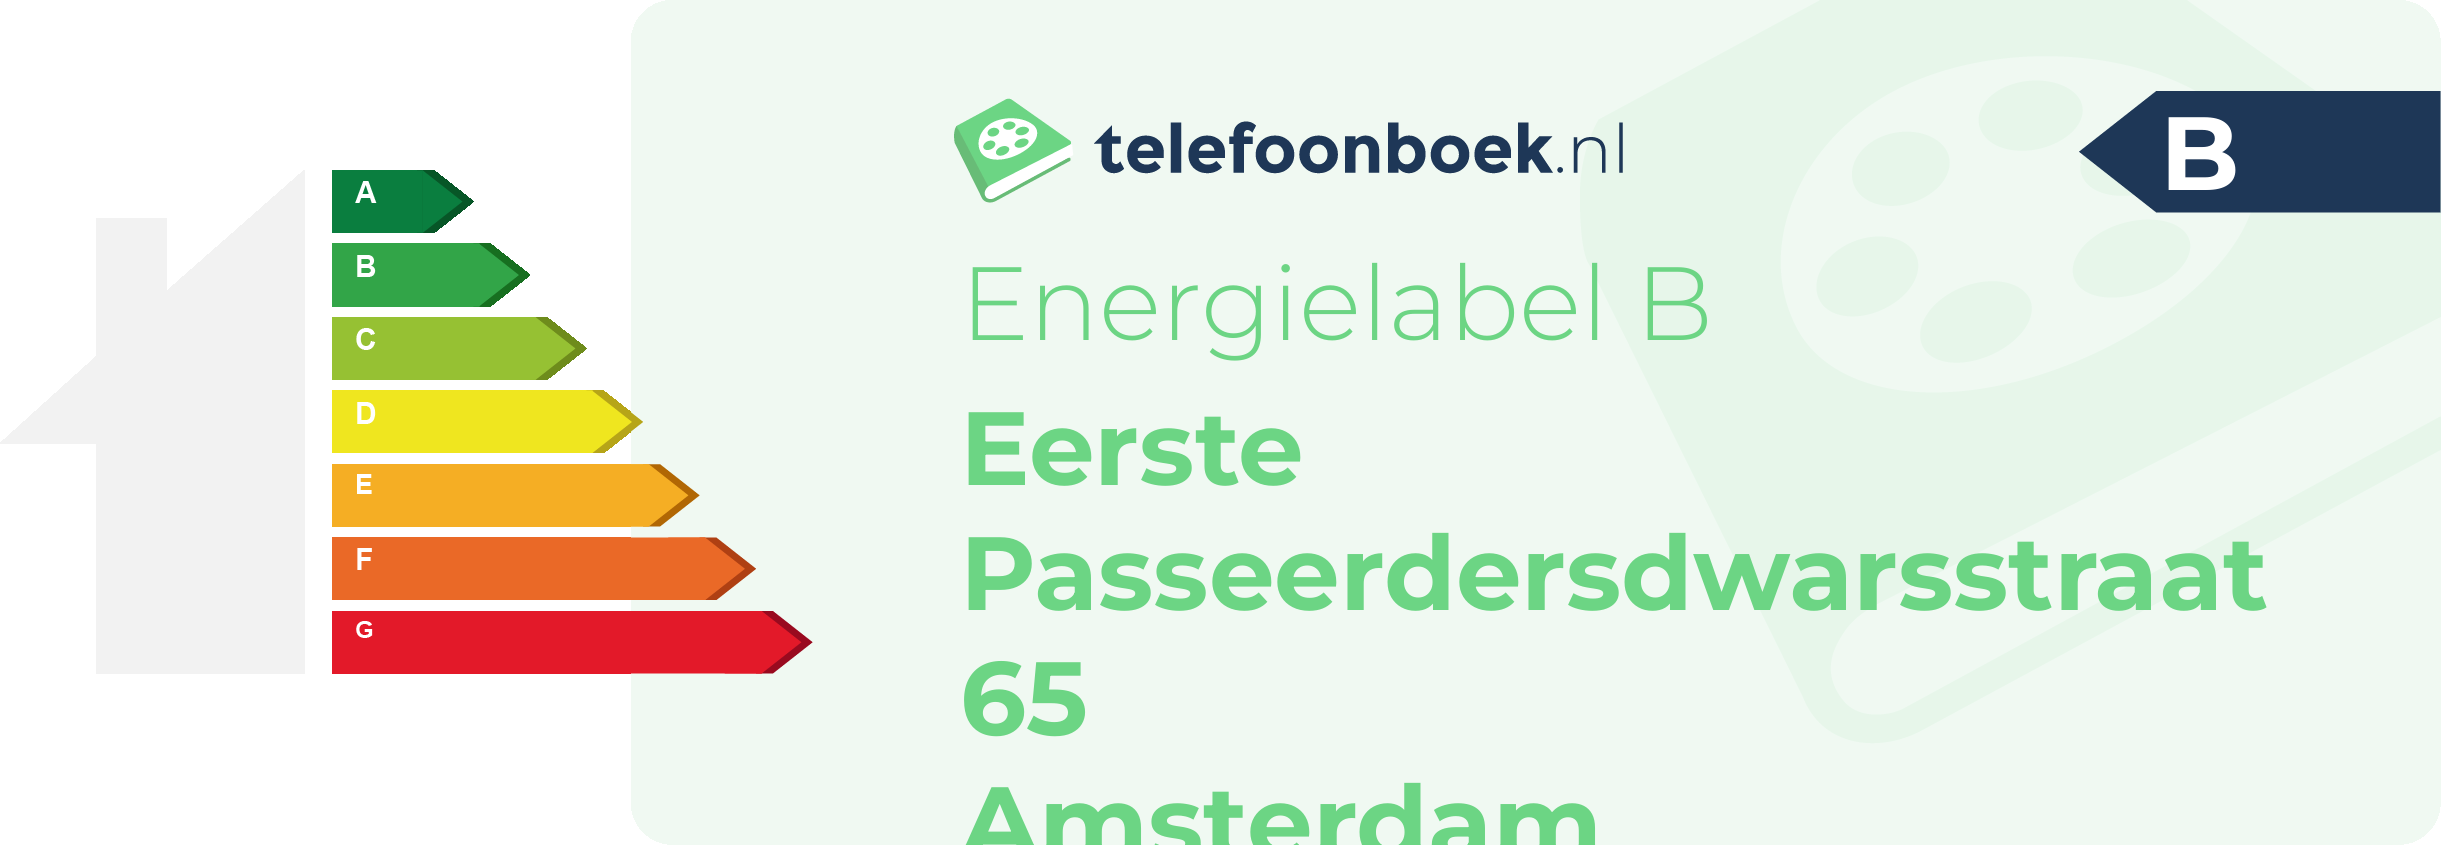 Energielabel Eerste Passeerdersdwarsstraat 65 Amsterdam